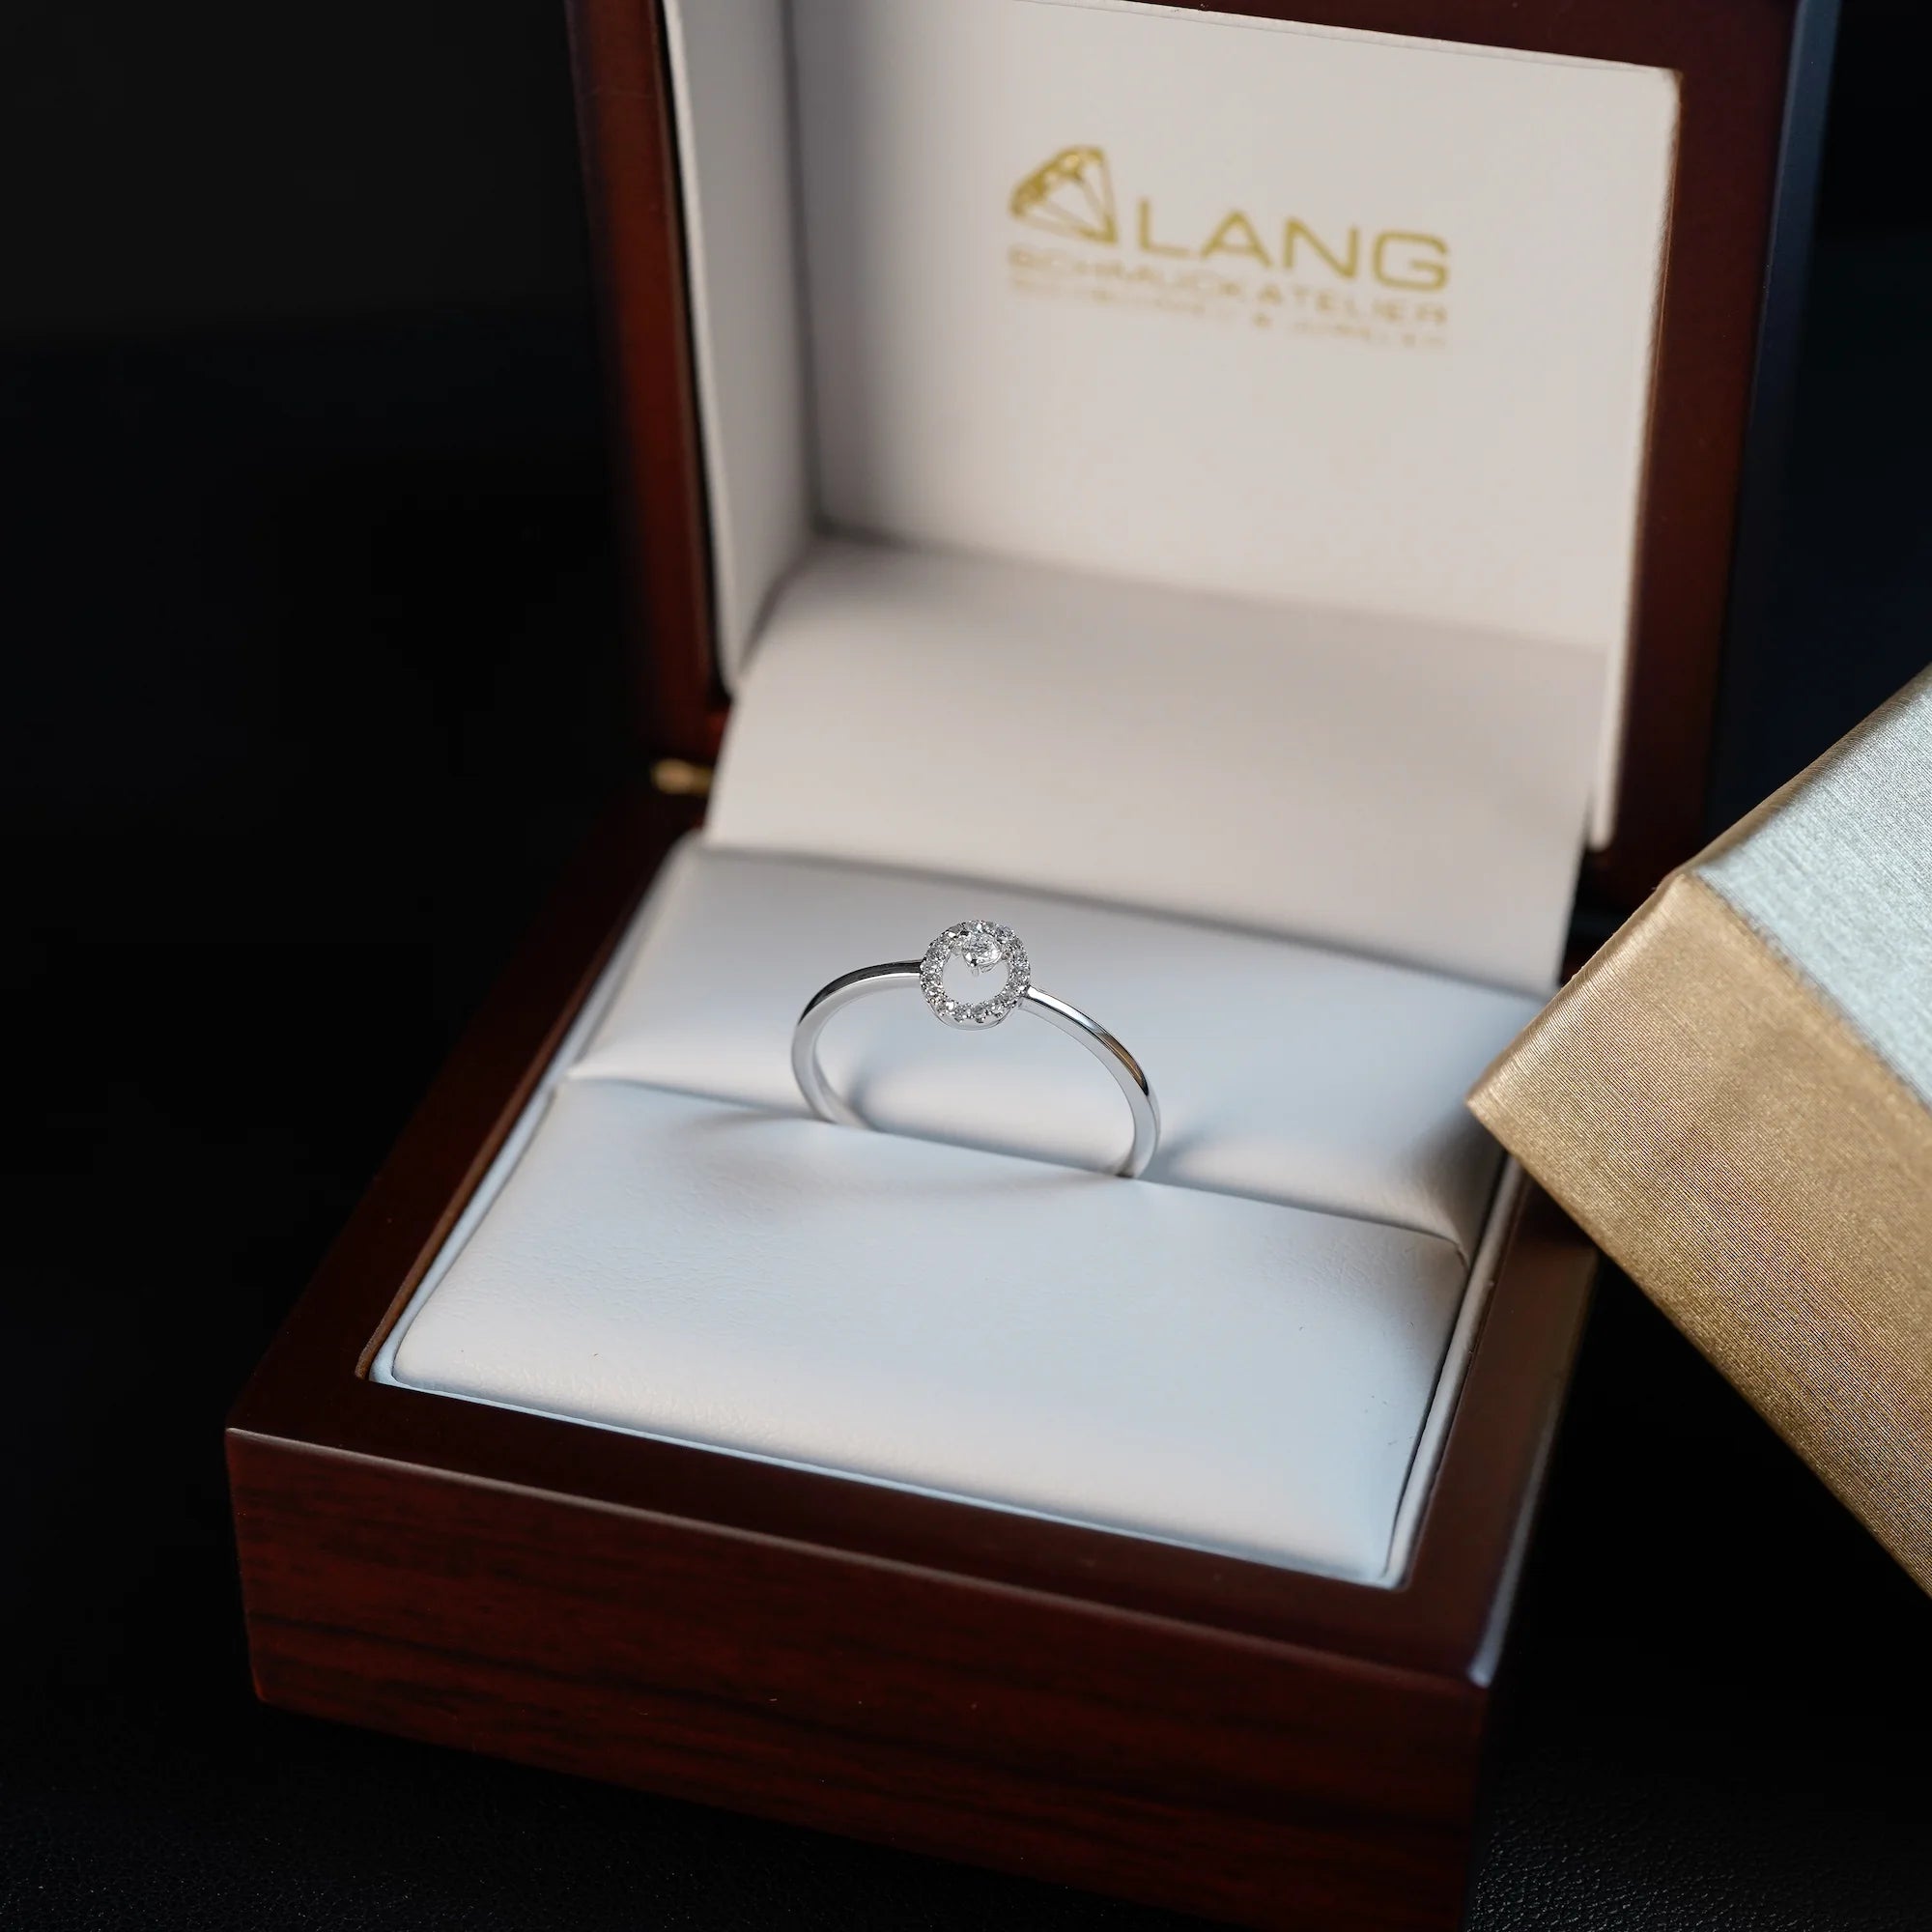 "Fine Oval" Verlobungsring aus Weißgold, der mit einem ovalen Diamantkranz verziert wurde, liegt in der Schmuckatelier Lang Verpackung